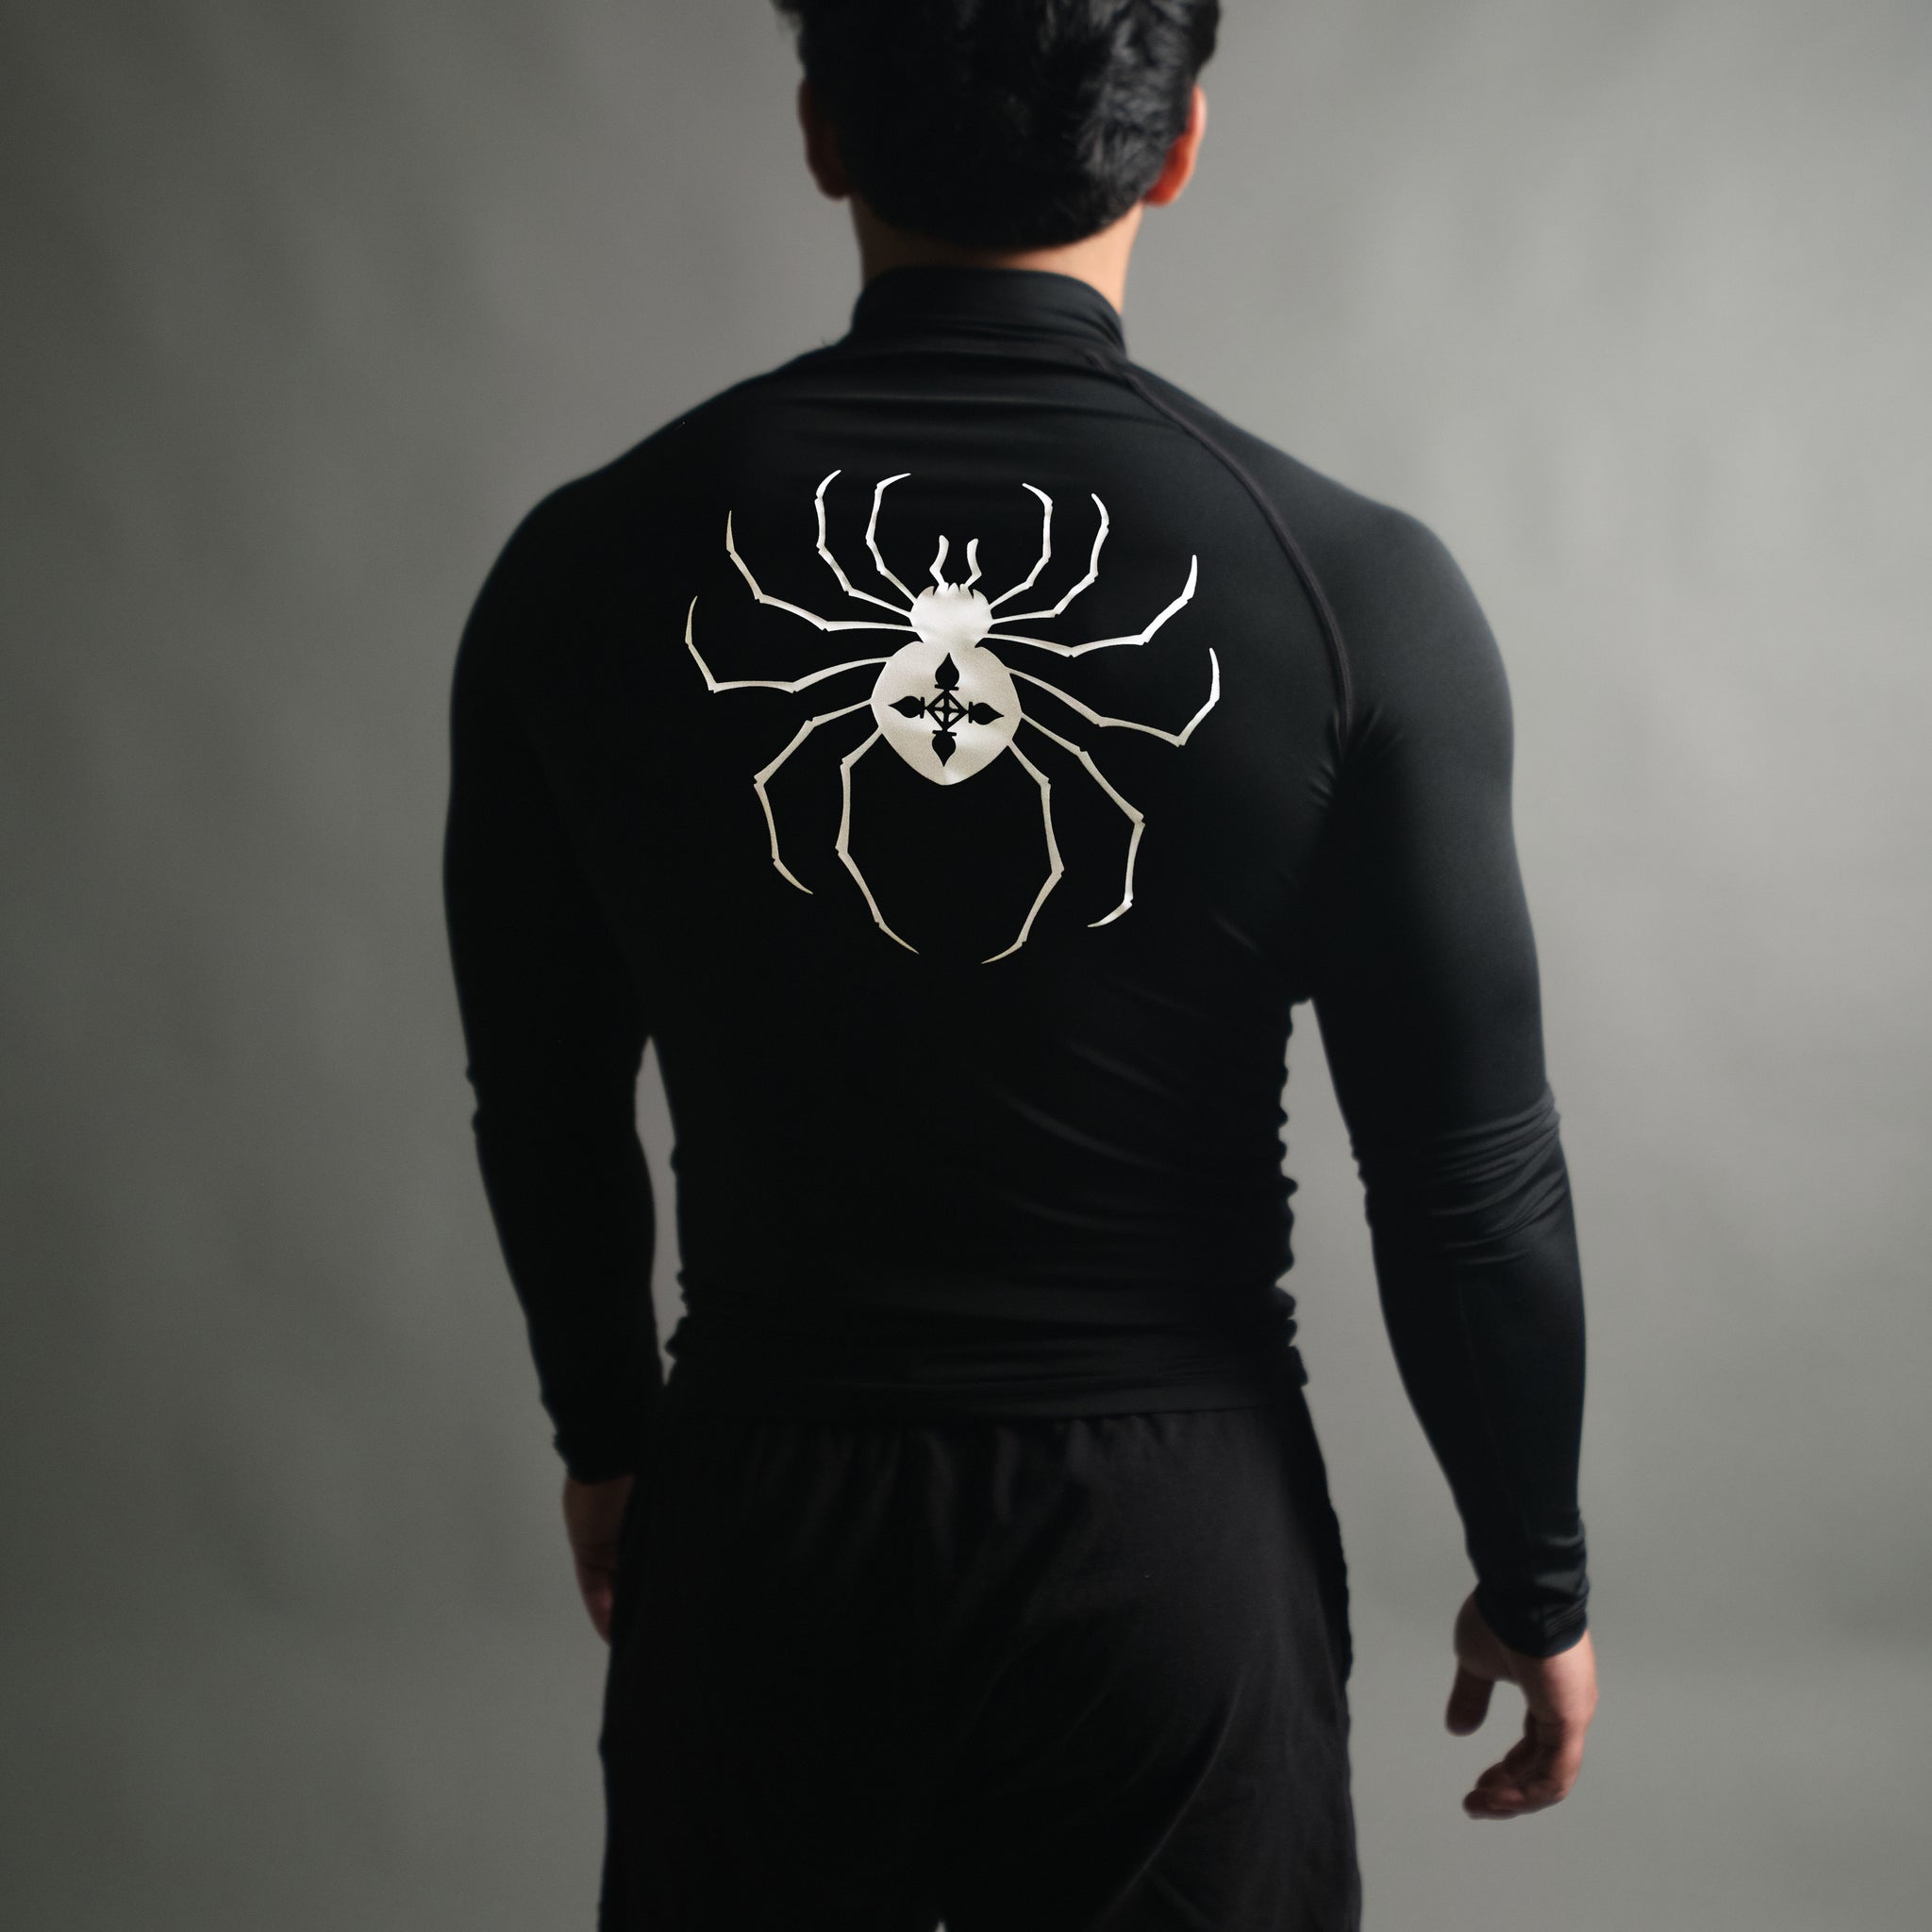 Chrollo Spider Mockneck Compression Long Sleeve in Black